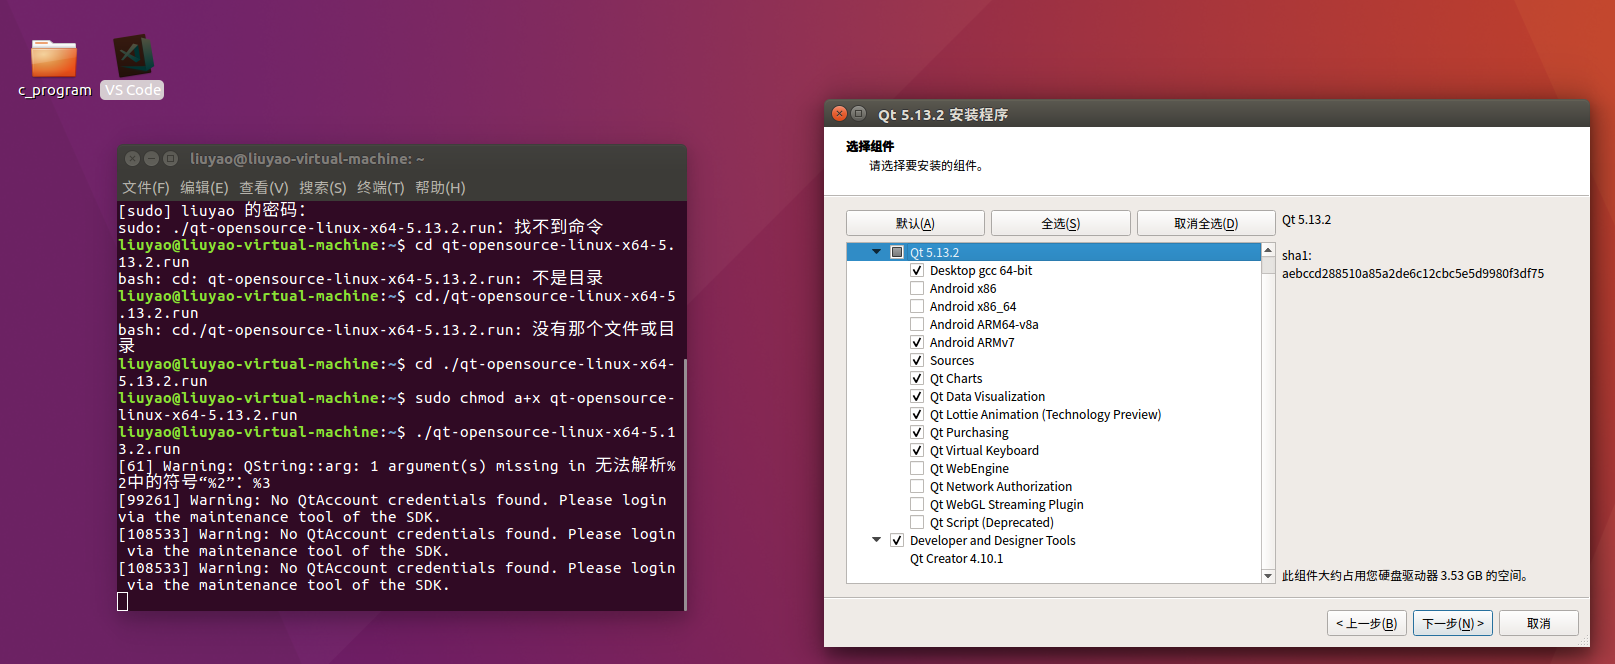 在ubuntu下安装qt遇到的问题 GL/gl:No such file or directory